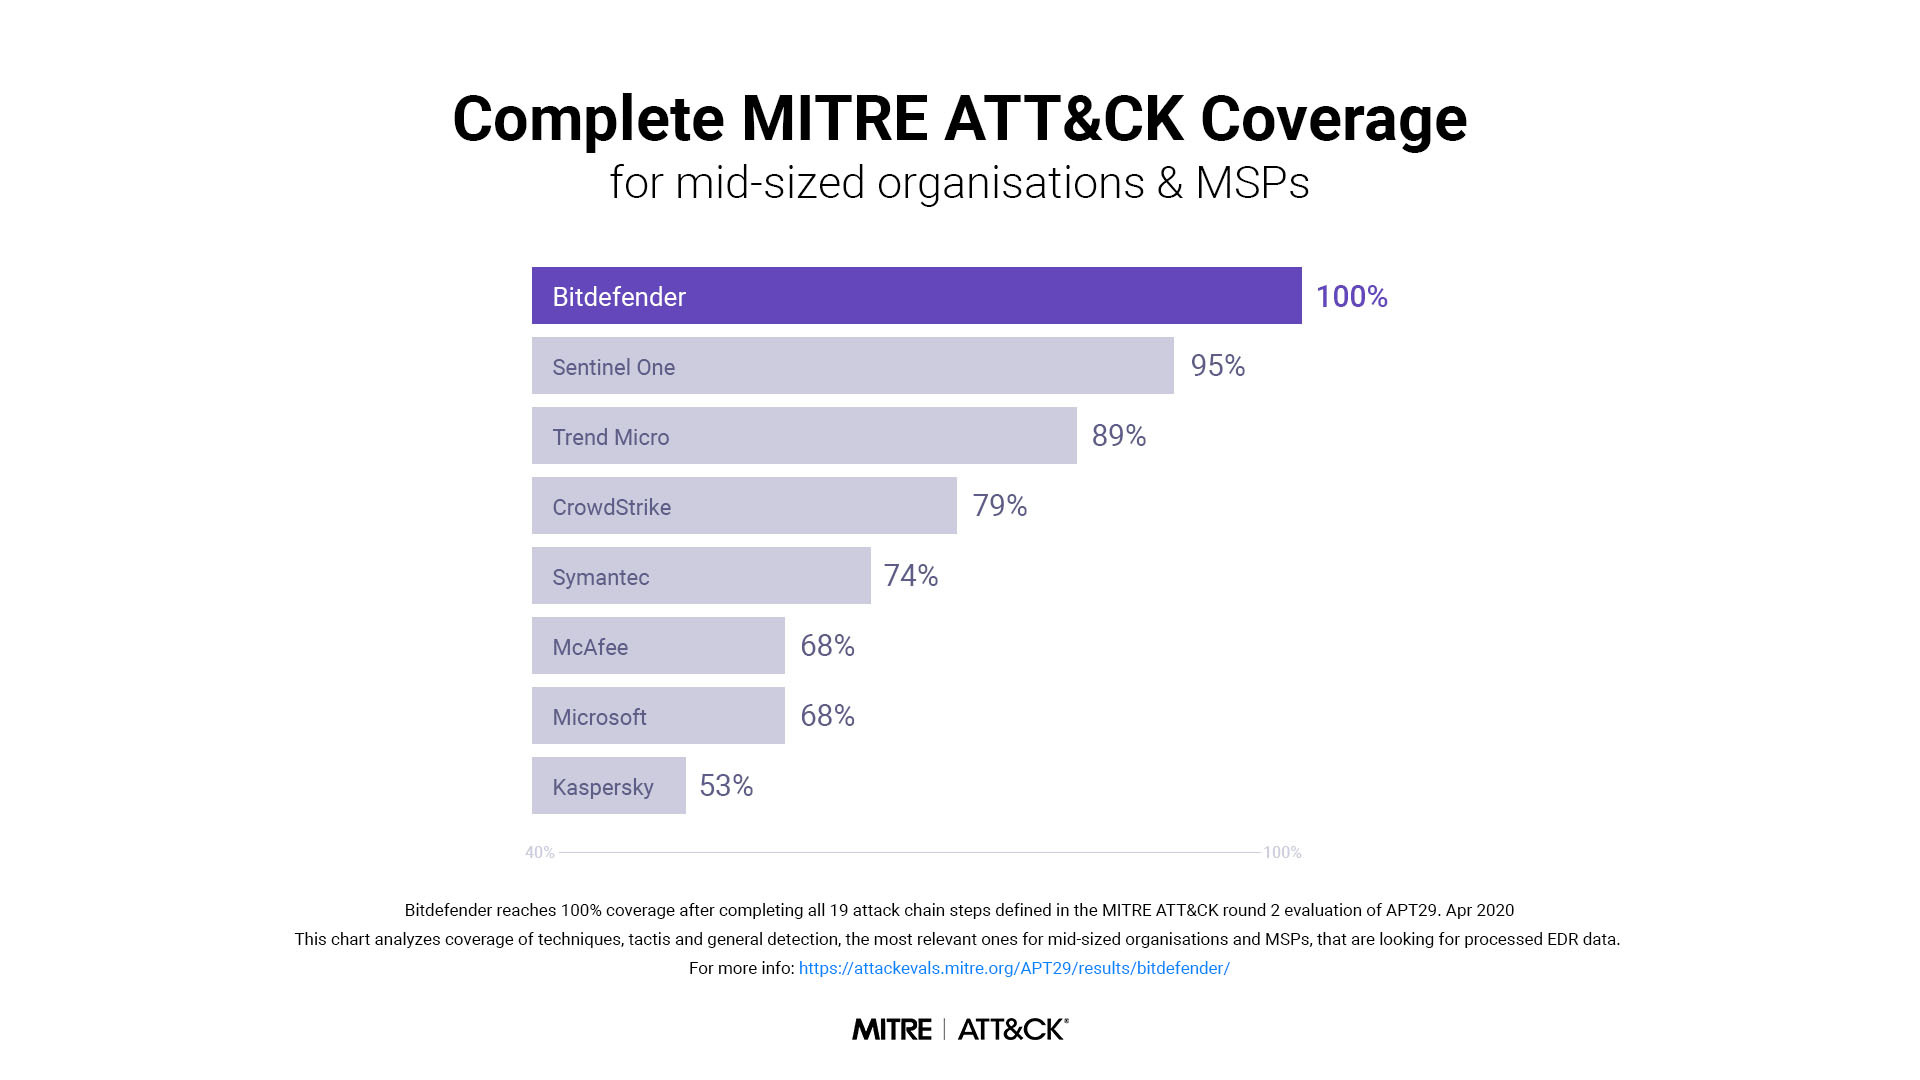 MITRE ATT&CK Evaluation - Bitdefender a Stellar EDR Vendor For Midsized Organizations & MSPs